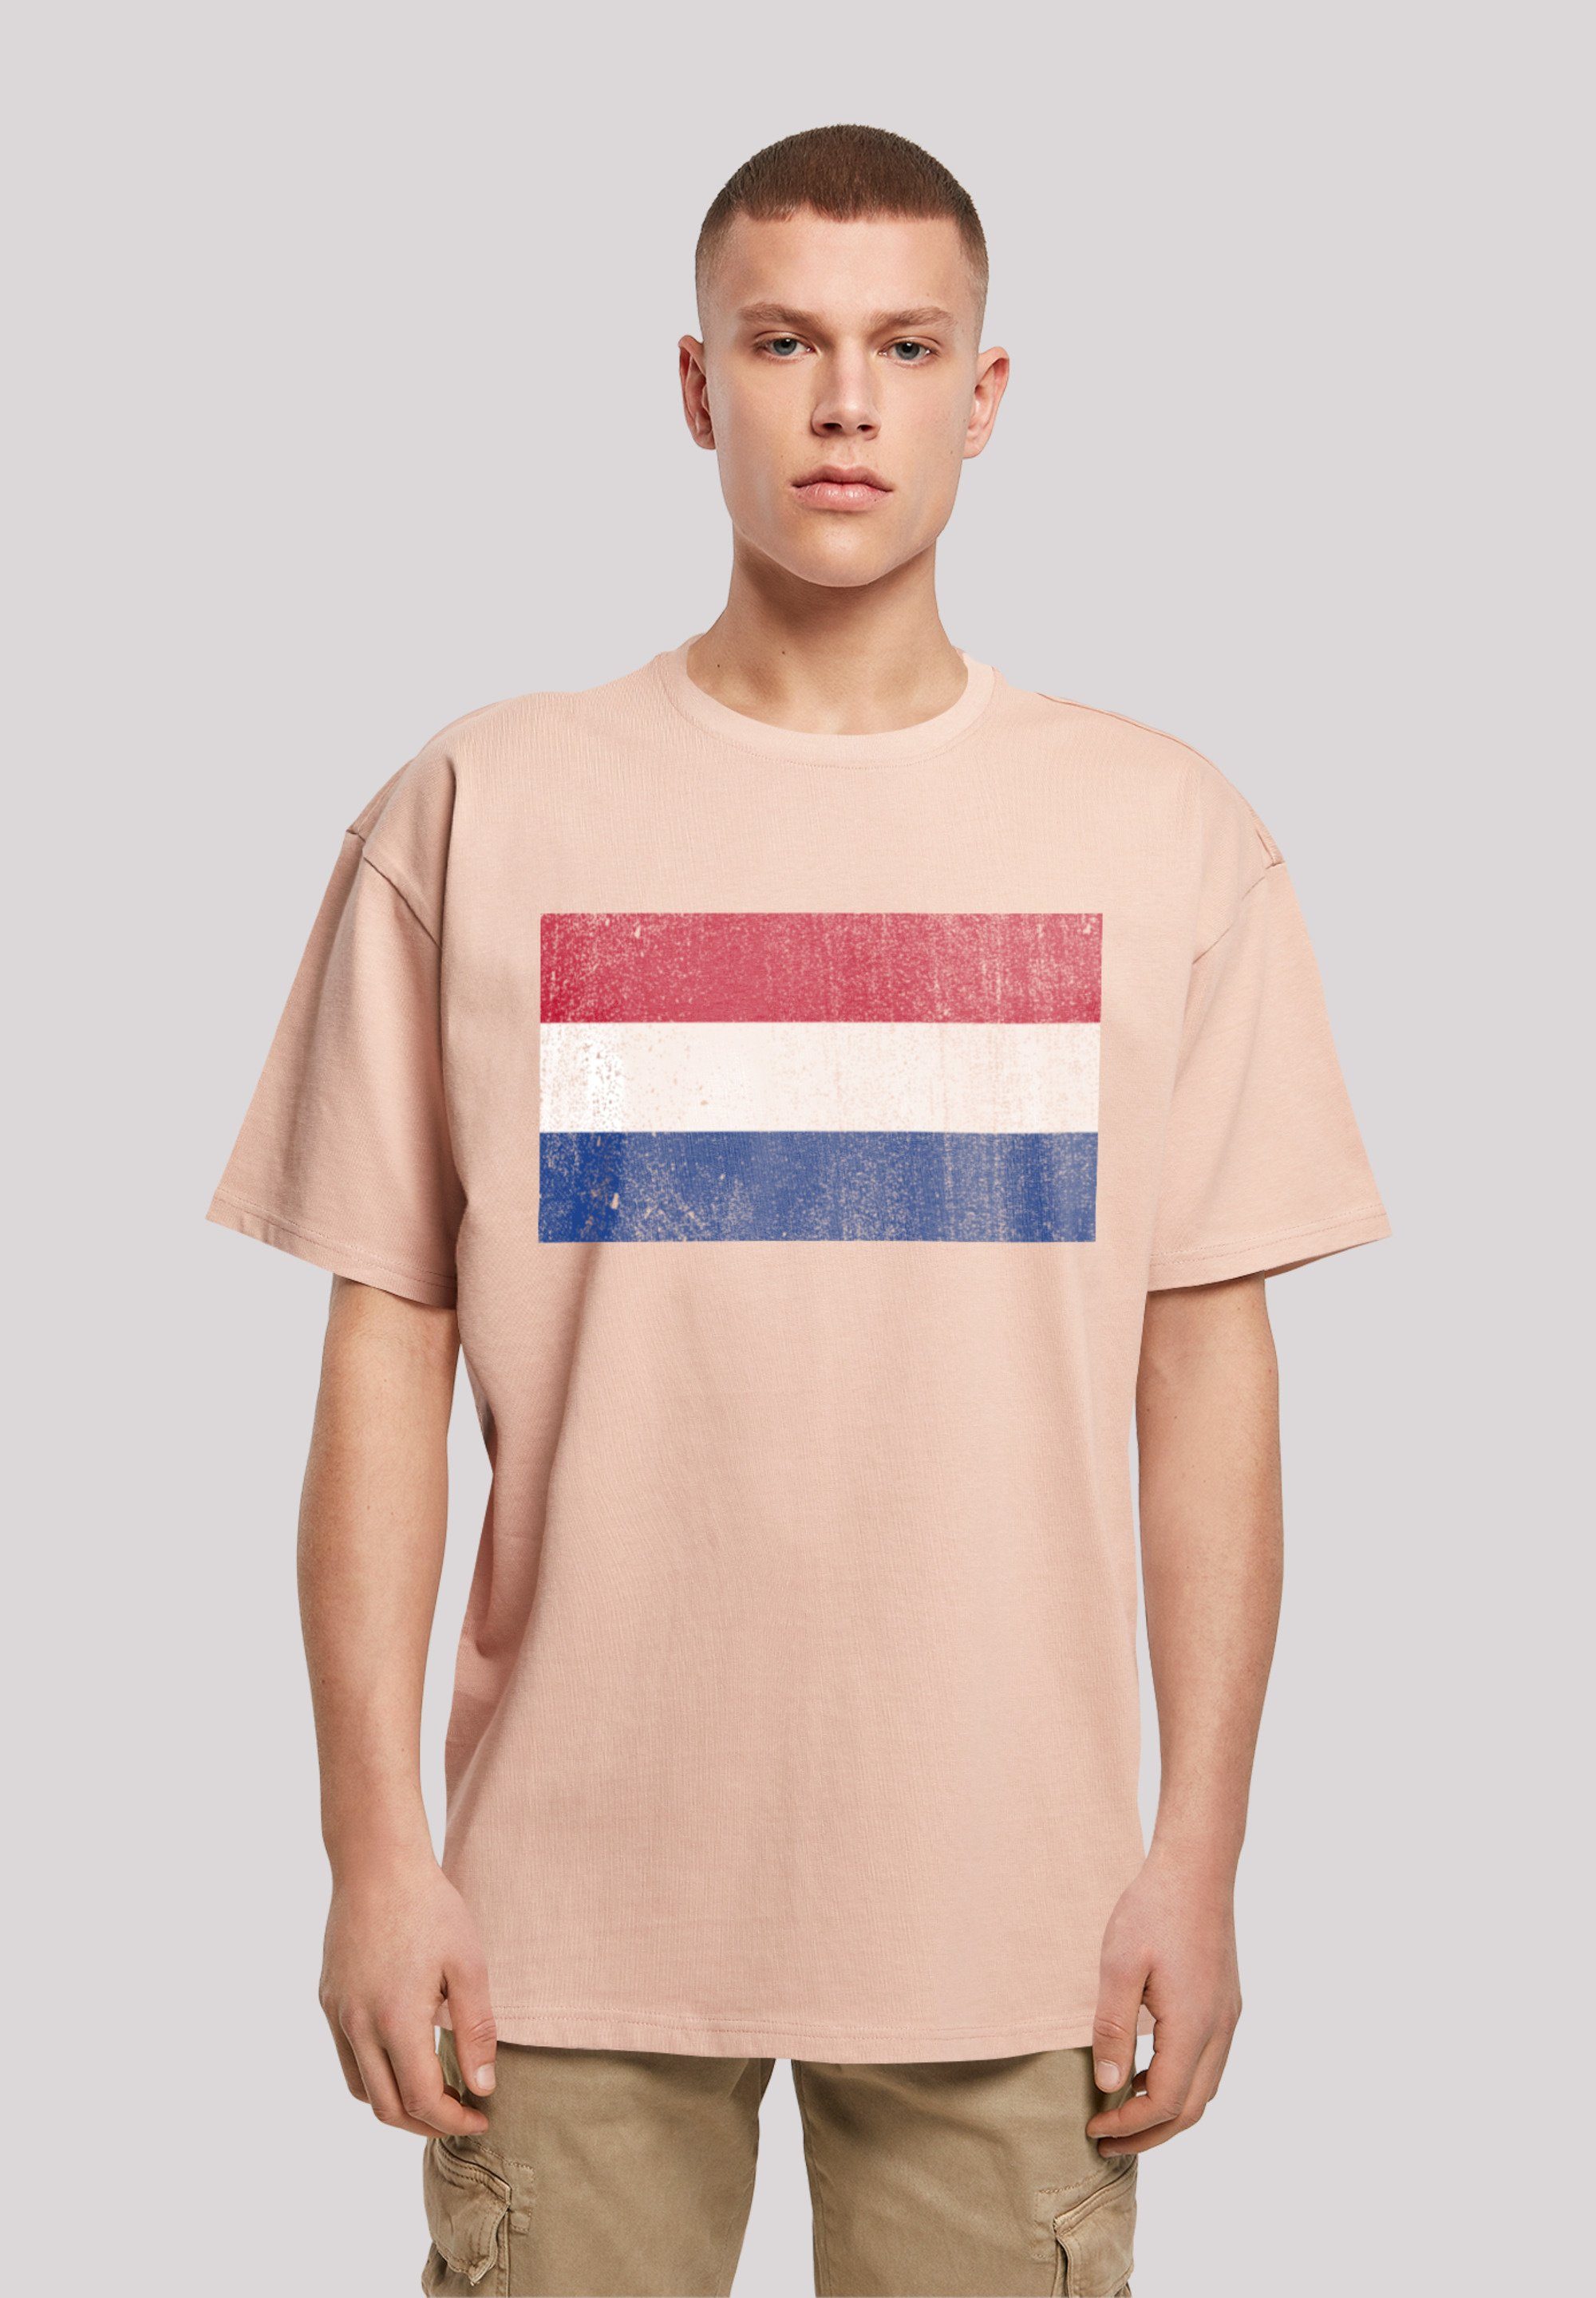 Flagge überschnittene F4NT4STIC Schultern und distressed Passform NIederlande T-Shirt Print, Weite Netherlands Holland